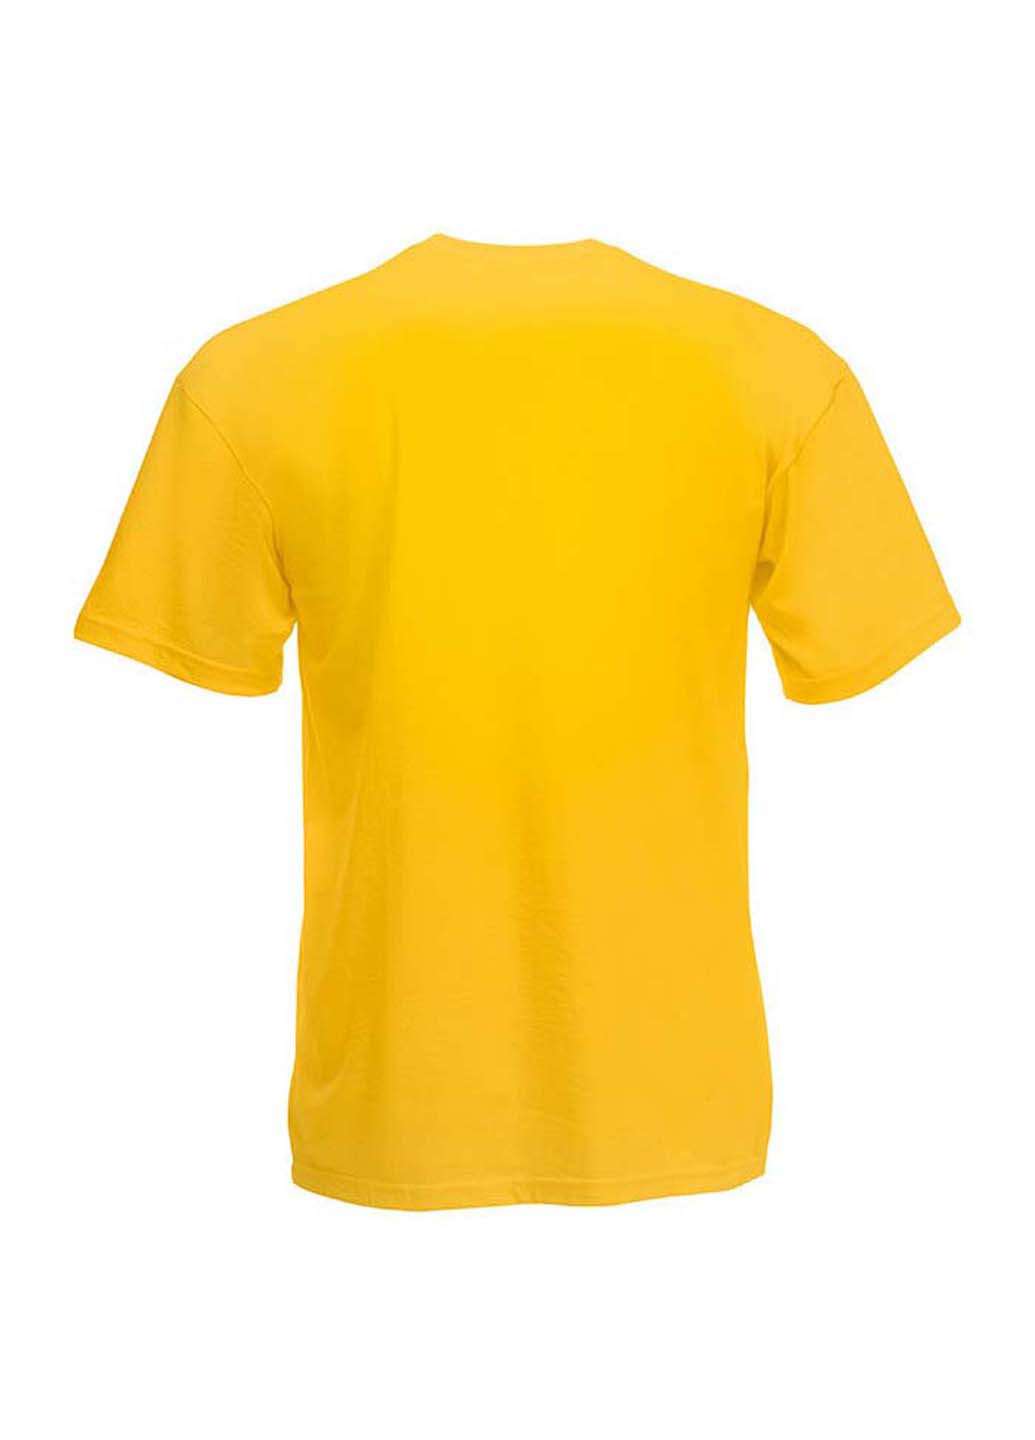 Желтая демисезонная футболка Fruit of the Loom 61033034164